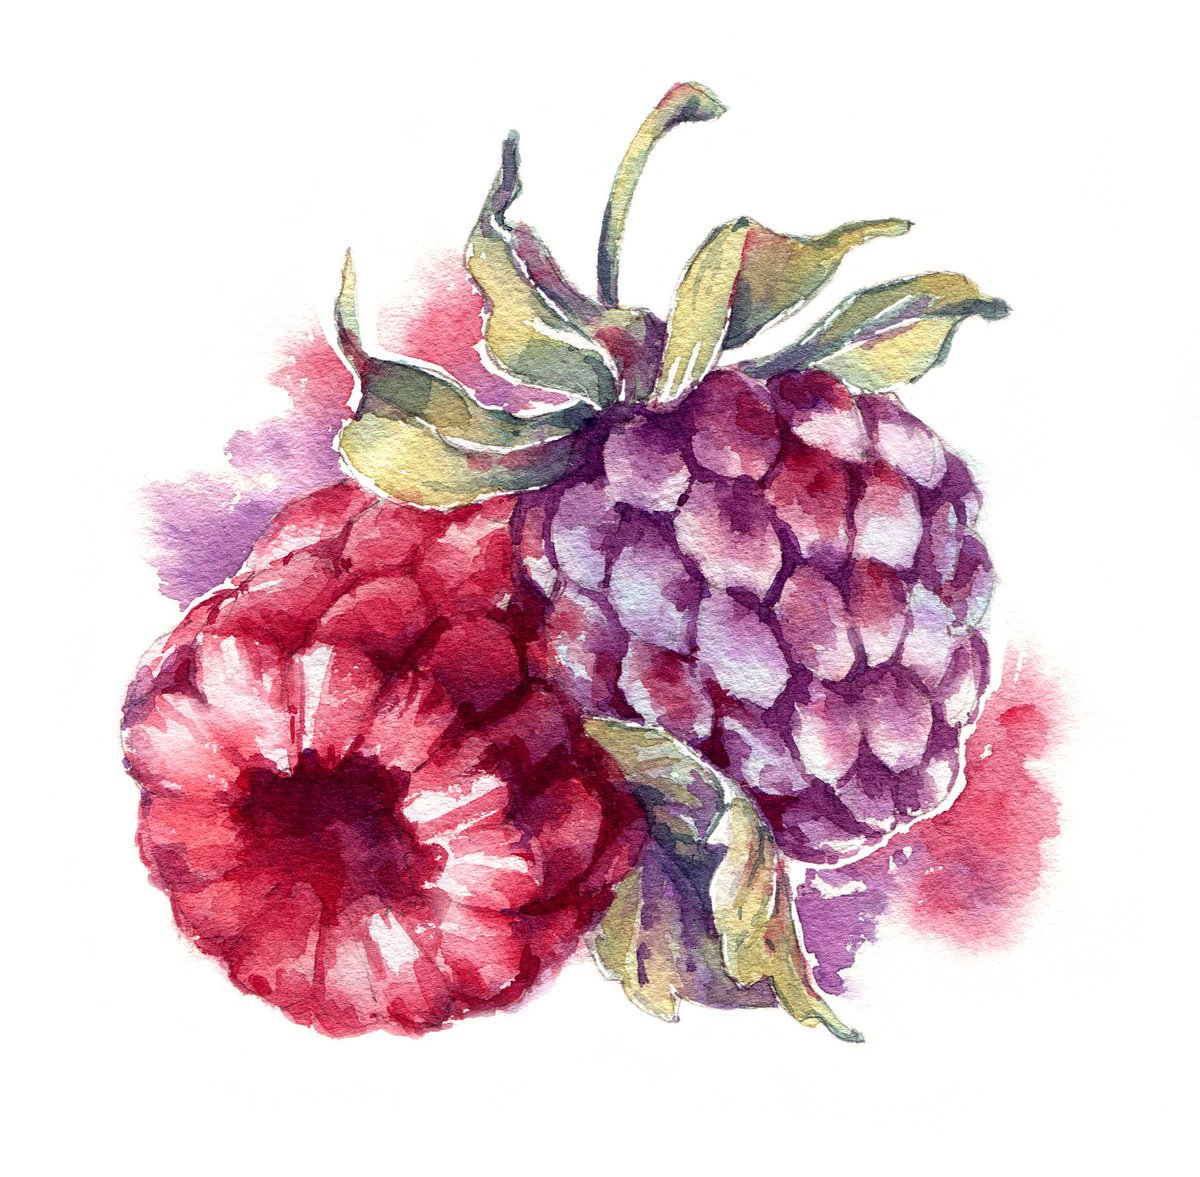 Raspberries and blackberries from the series of watercolor illustrations Berries by Ksenia Selianko